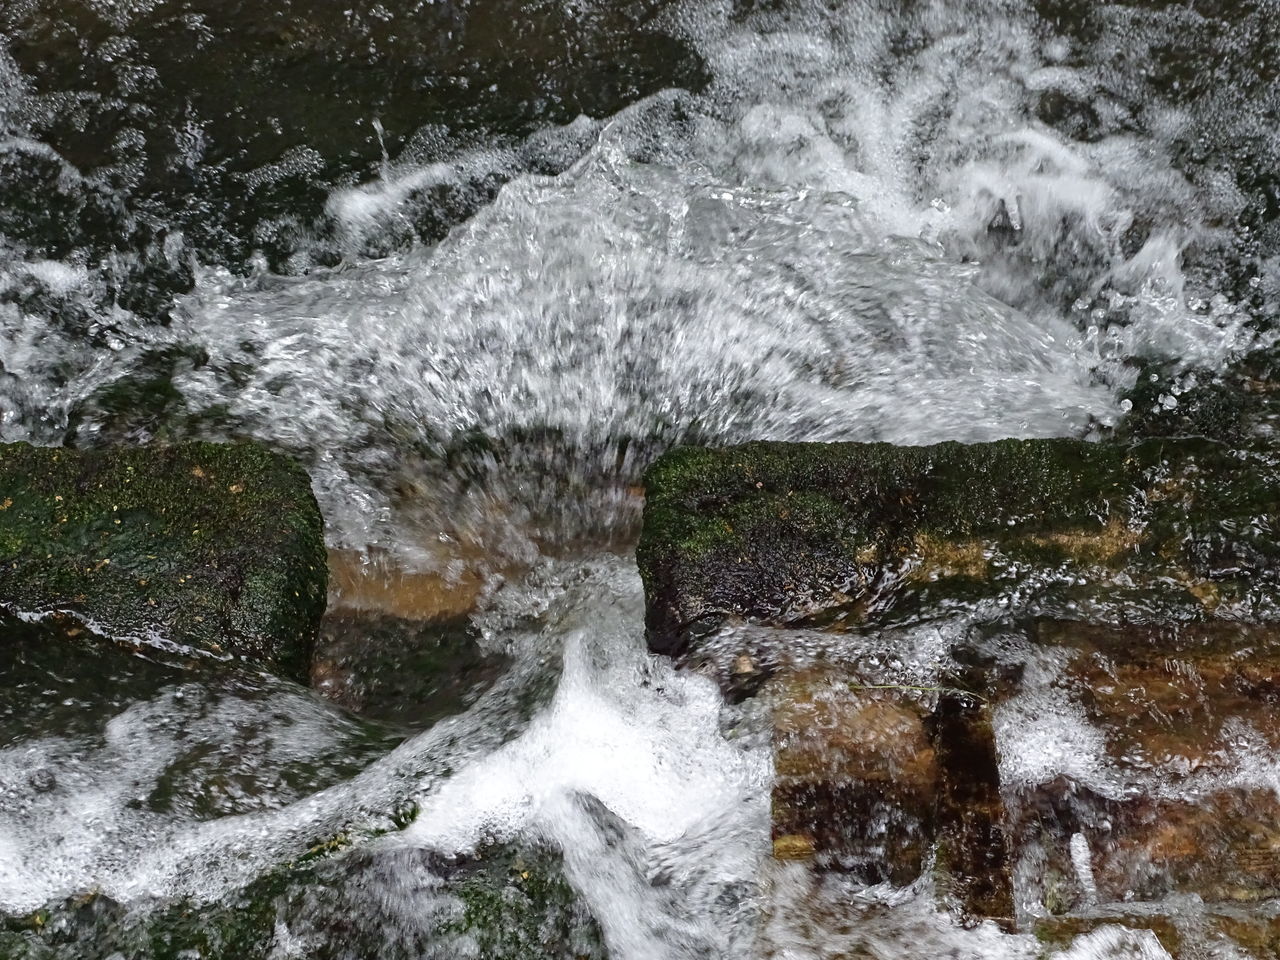 WATER SPLASHING ON ROCK